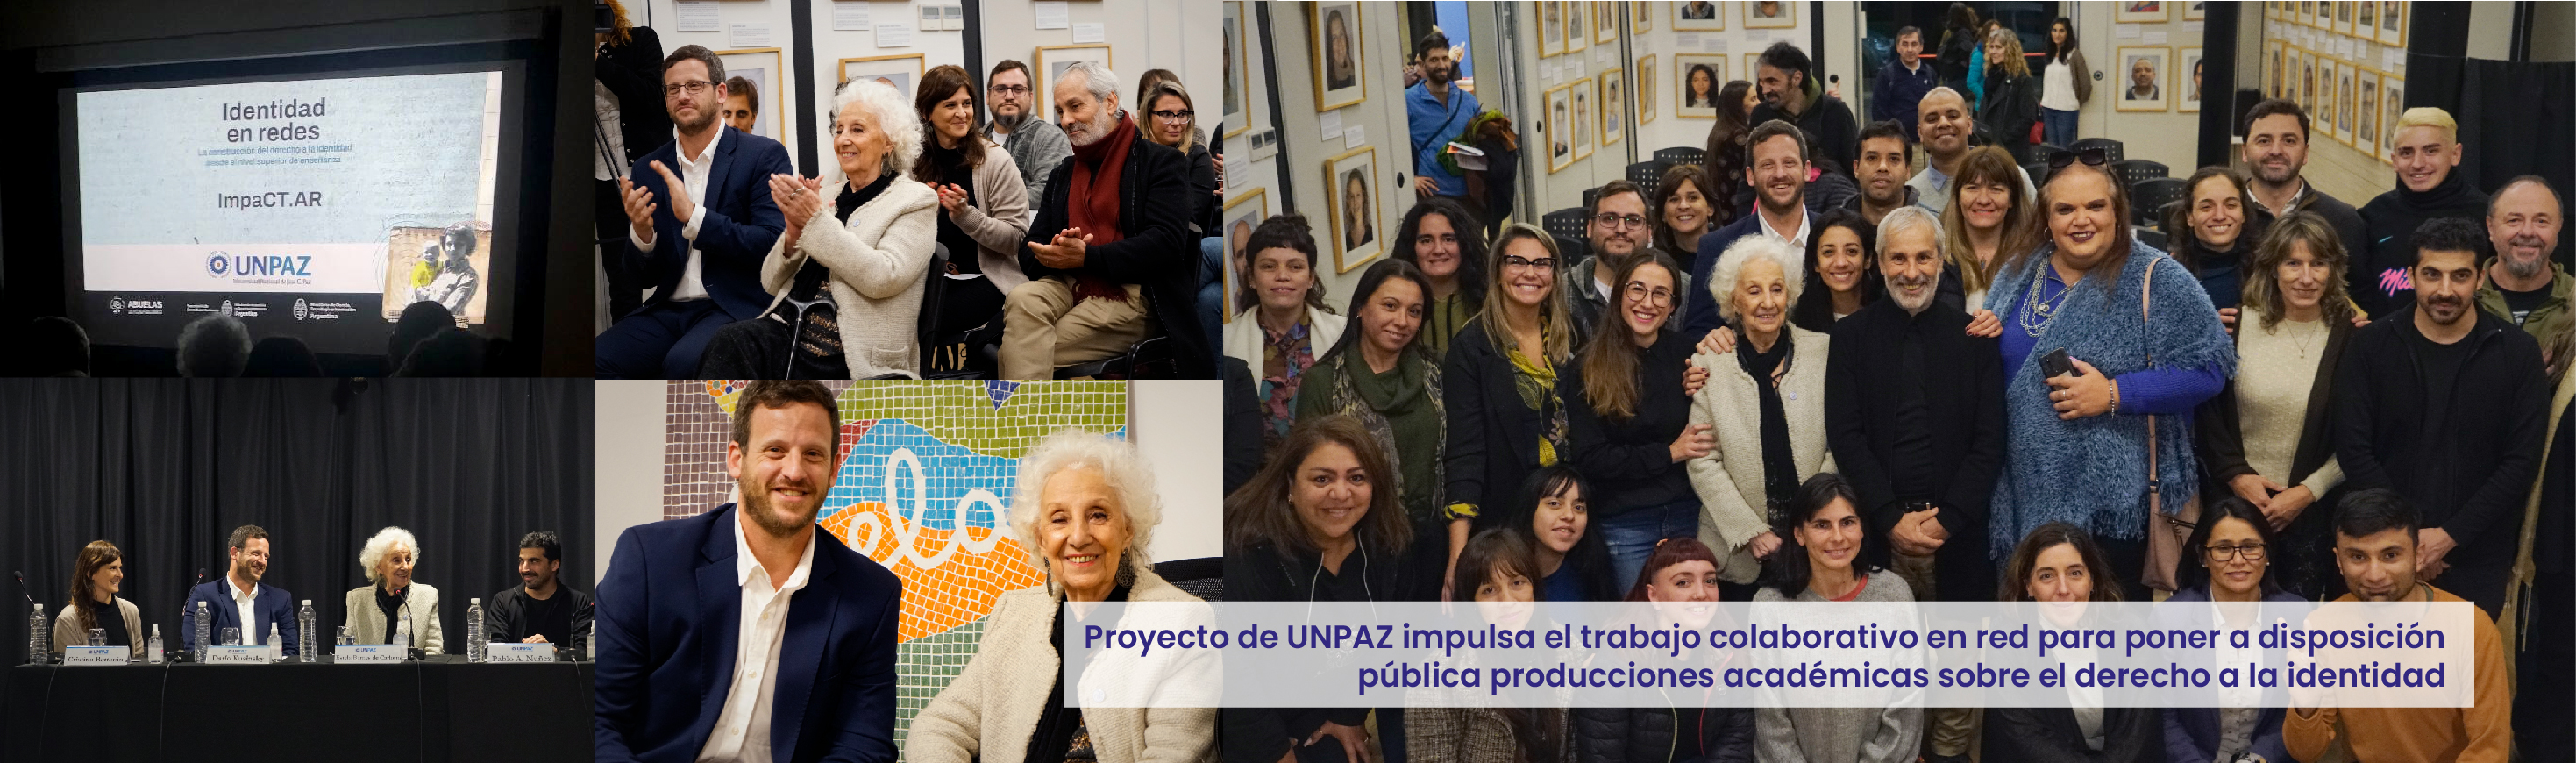 Proyecto de UNPAZ impulsa el trabajo colaborativo en red para poner a disposición pública producciones académicas sobre el derecho a la identidad